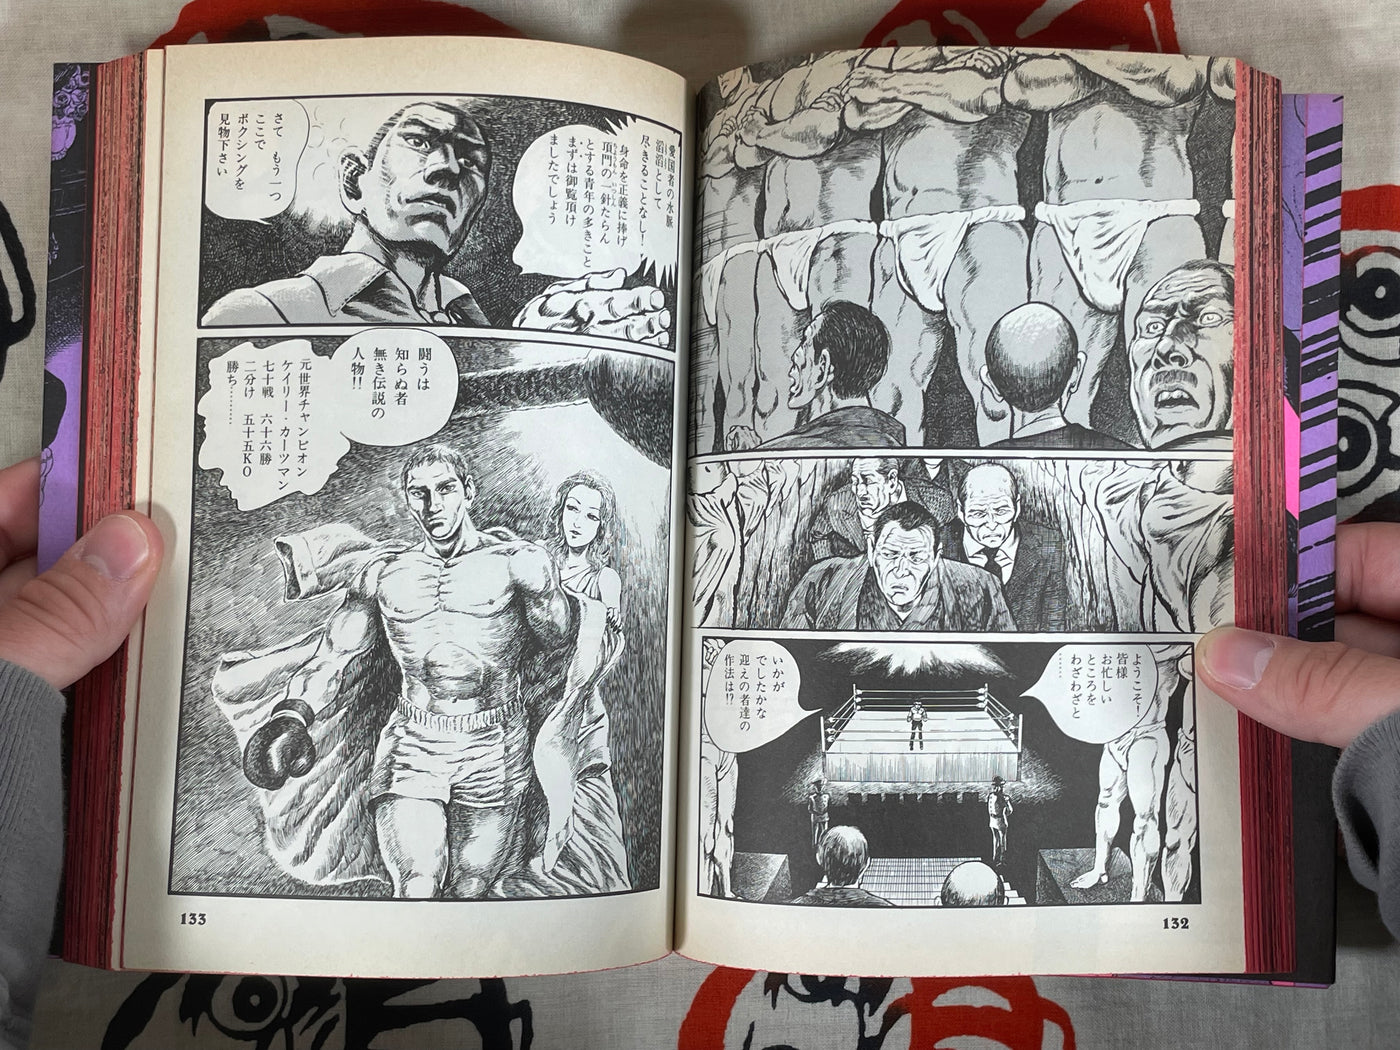 Flesh Bomb Era by Kazuhiko Miyaya (1985)